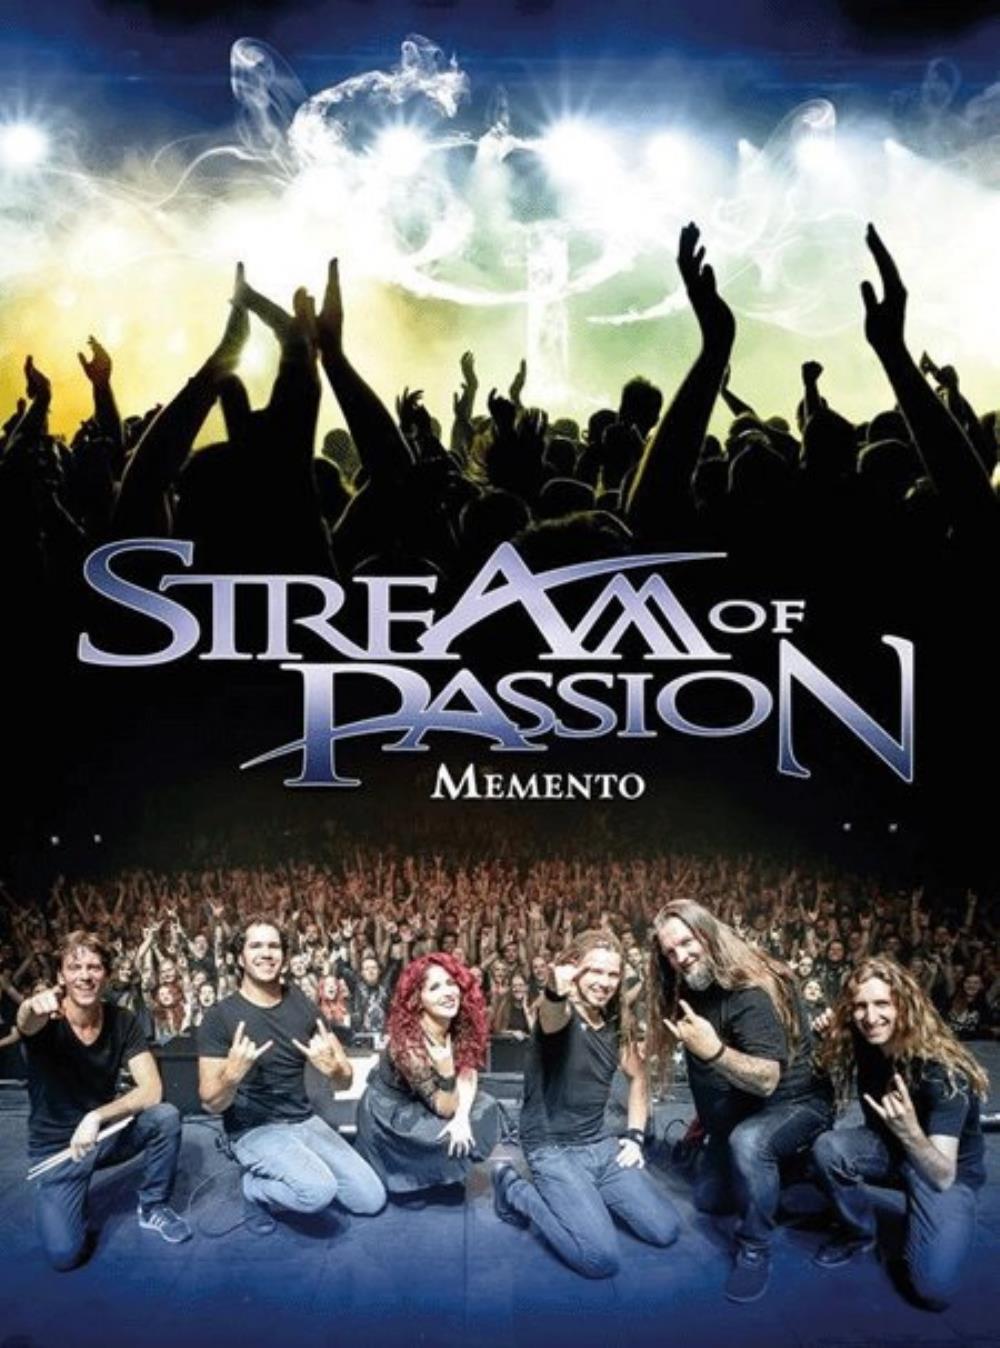 Stream Of Passion Memento album cover